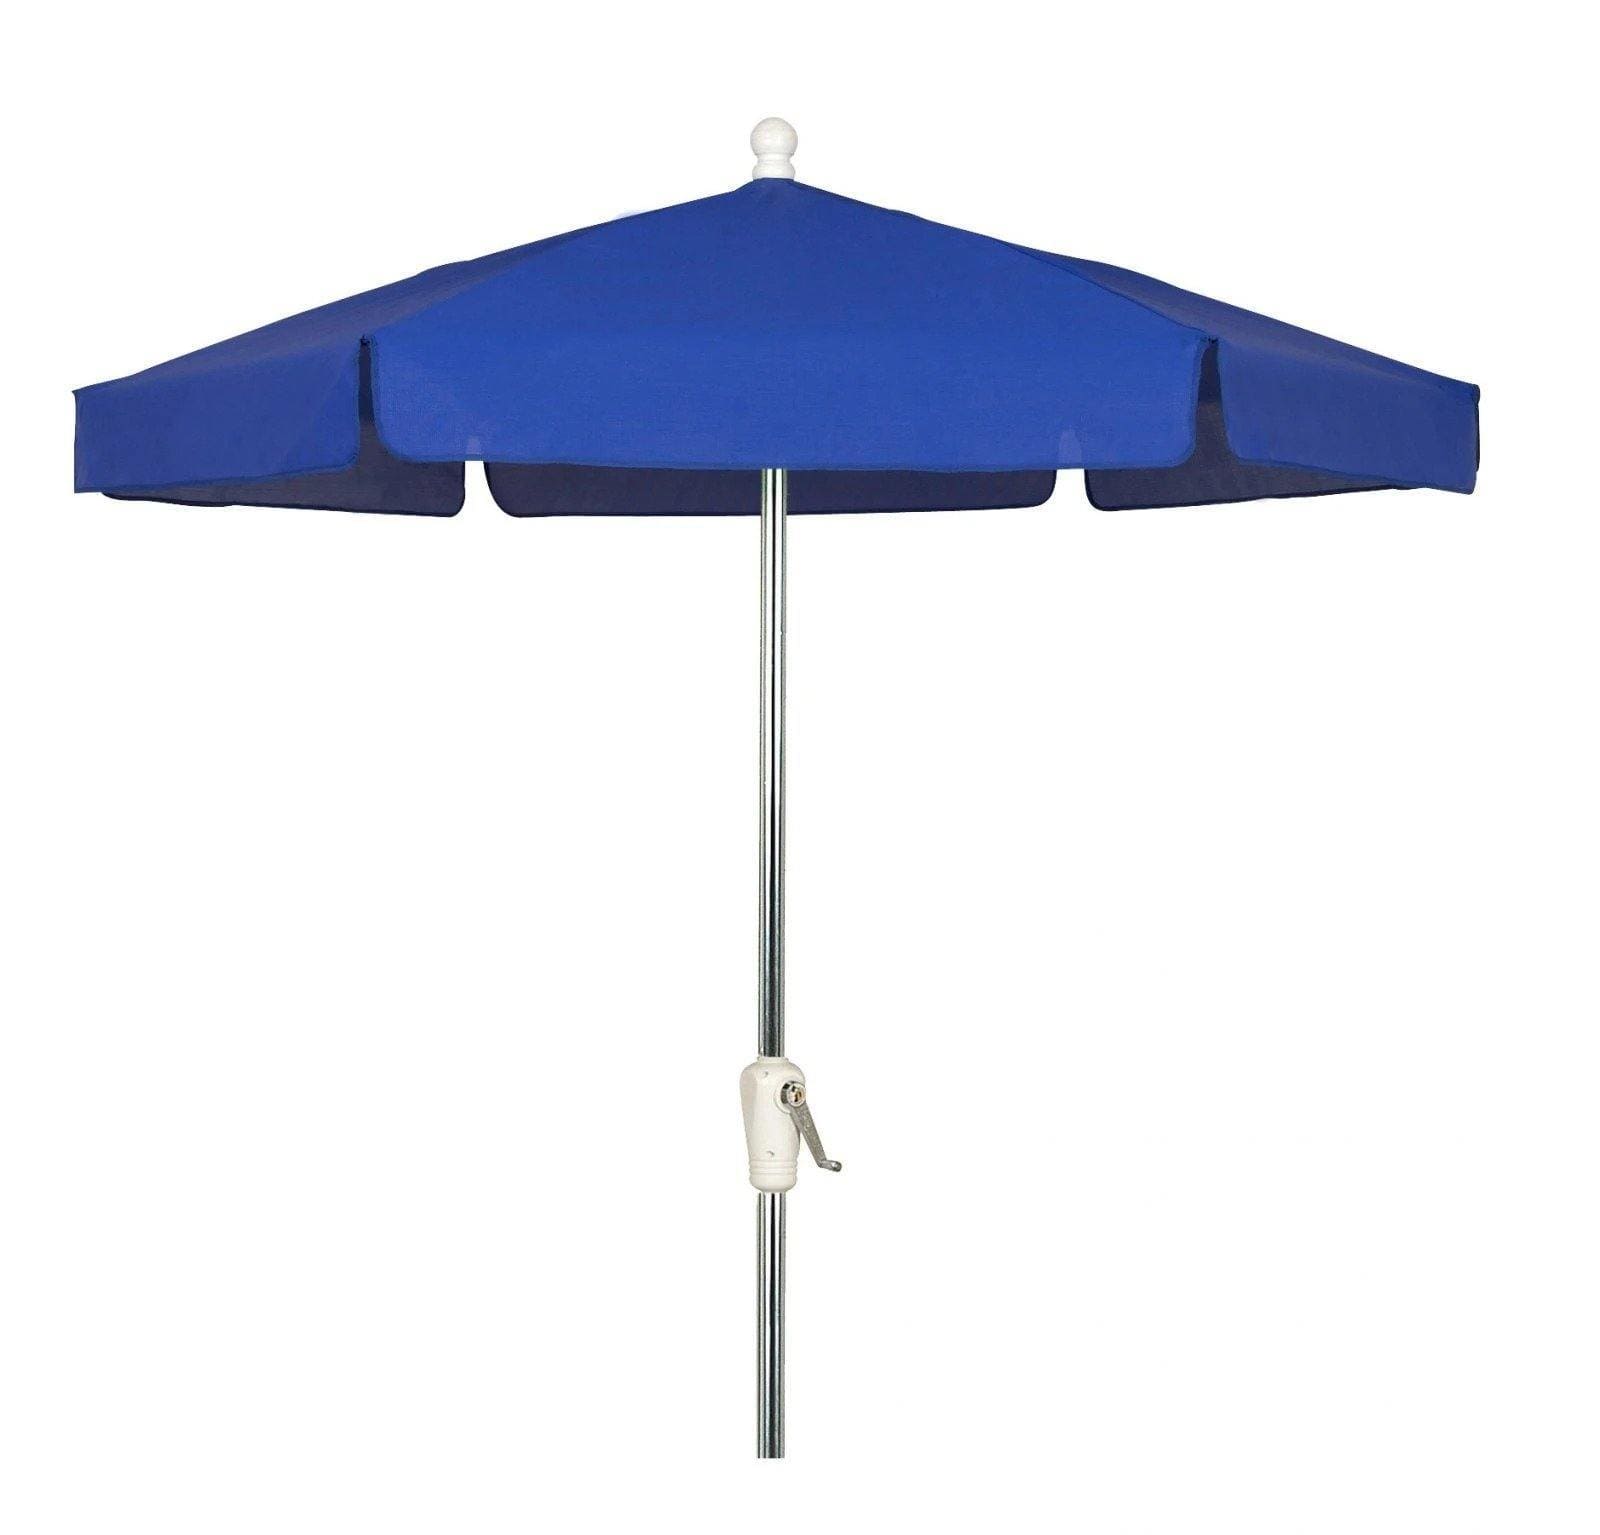 Fiberbuilt Table Umbrellas Pacific Blue Fiberbuilt 7.5' Garden Umbrella w/ Crank Lift and Tilt